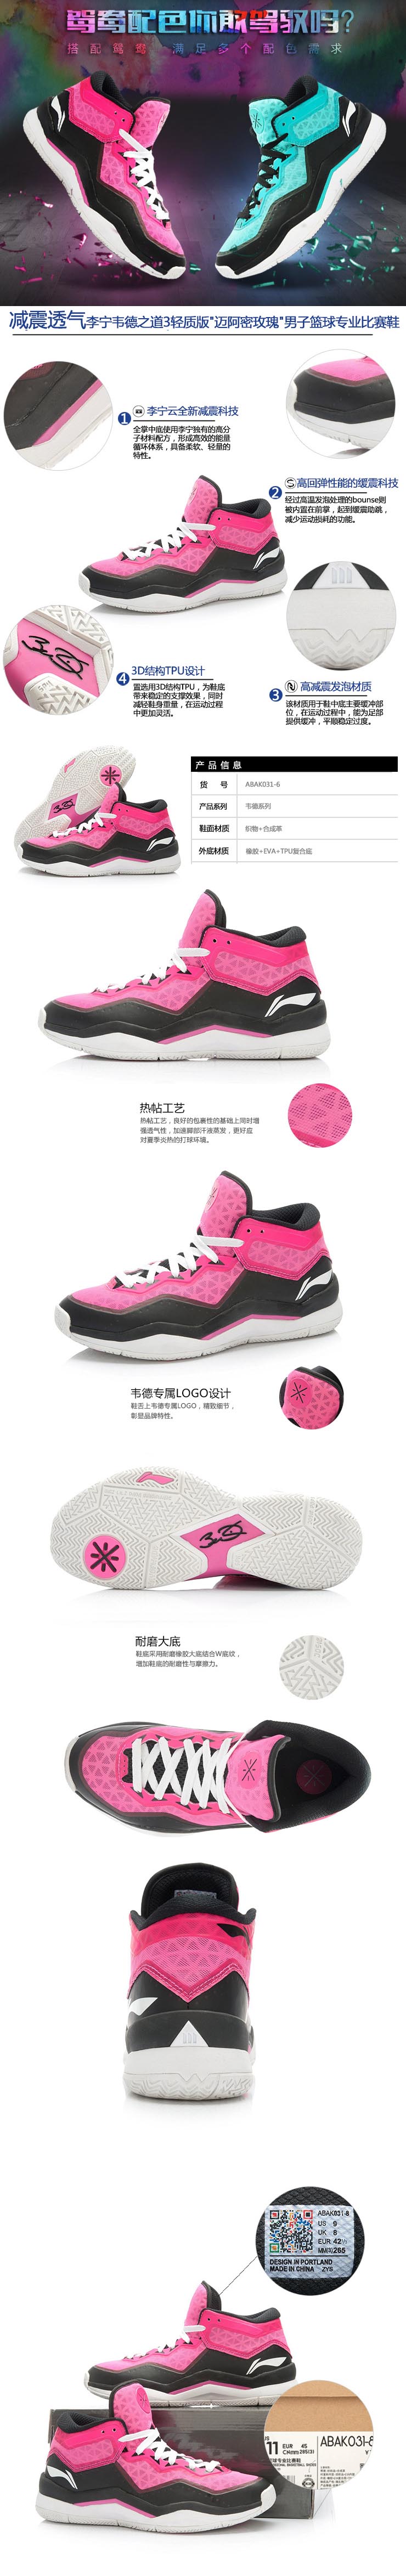 Li-Ning Way of Wade 3 Lite "Miami Rose" Premium Basketball Shoes 